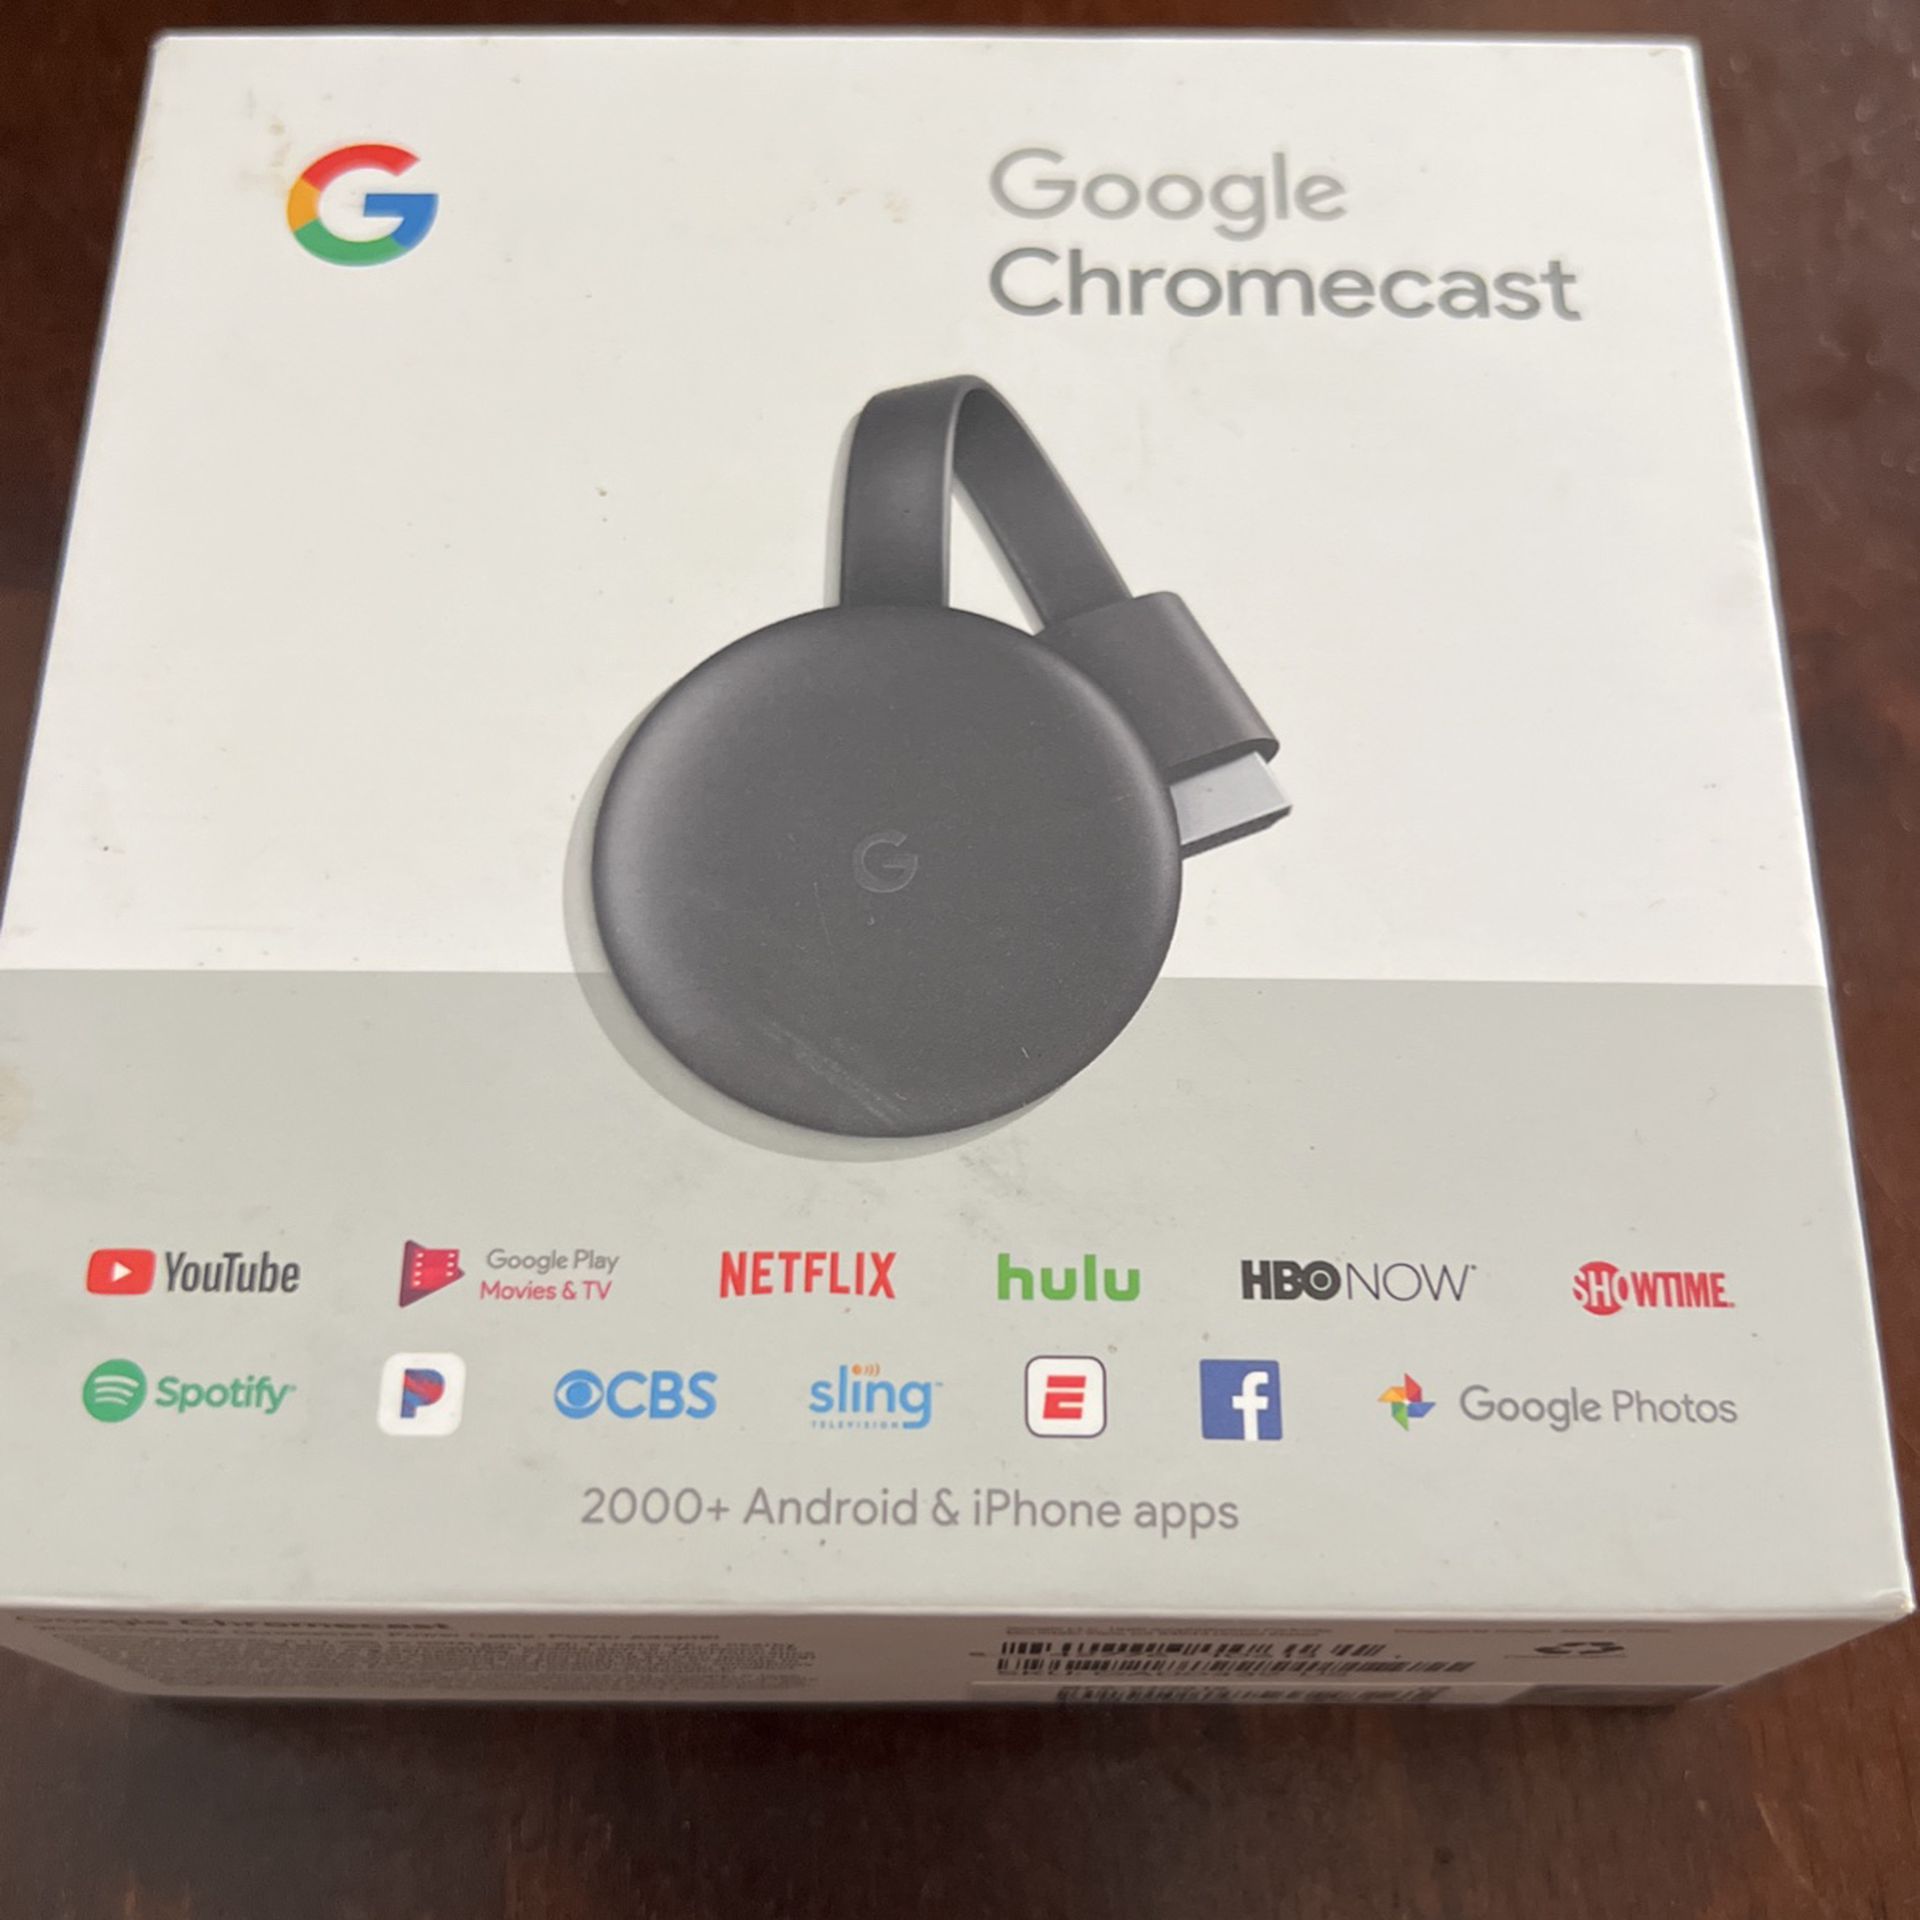 Google Cromecast